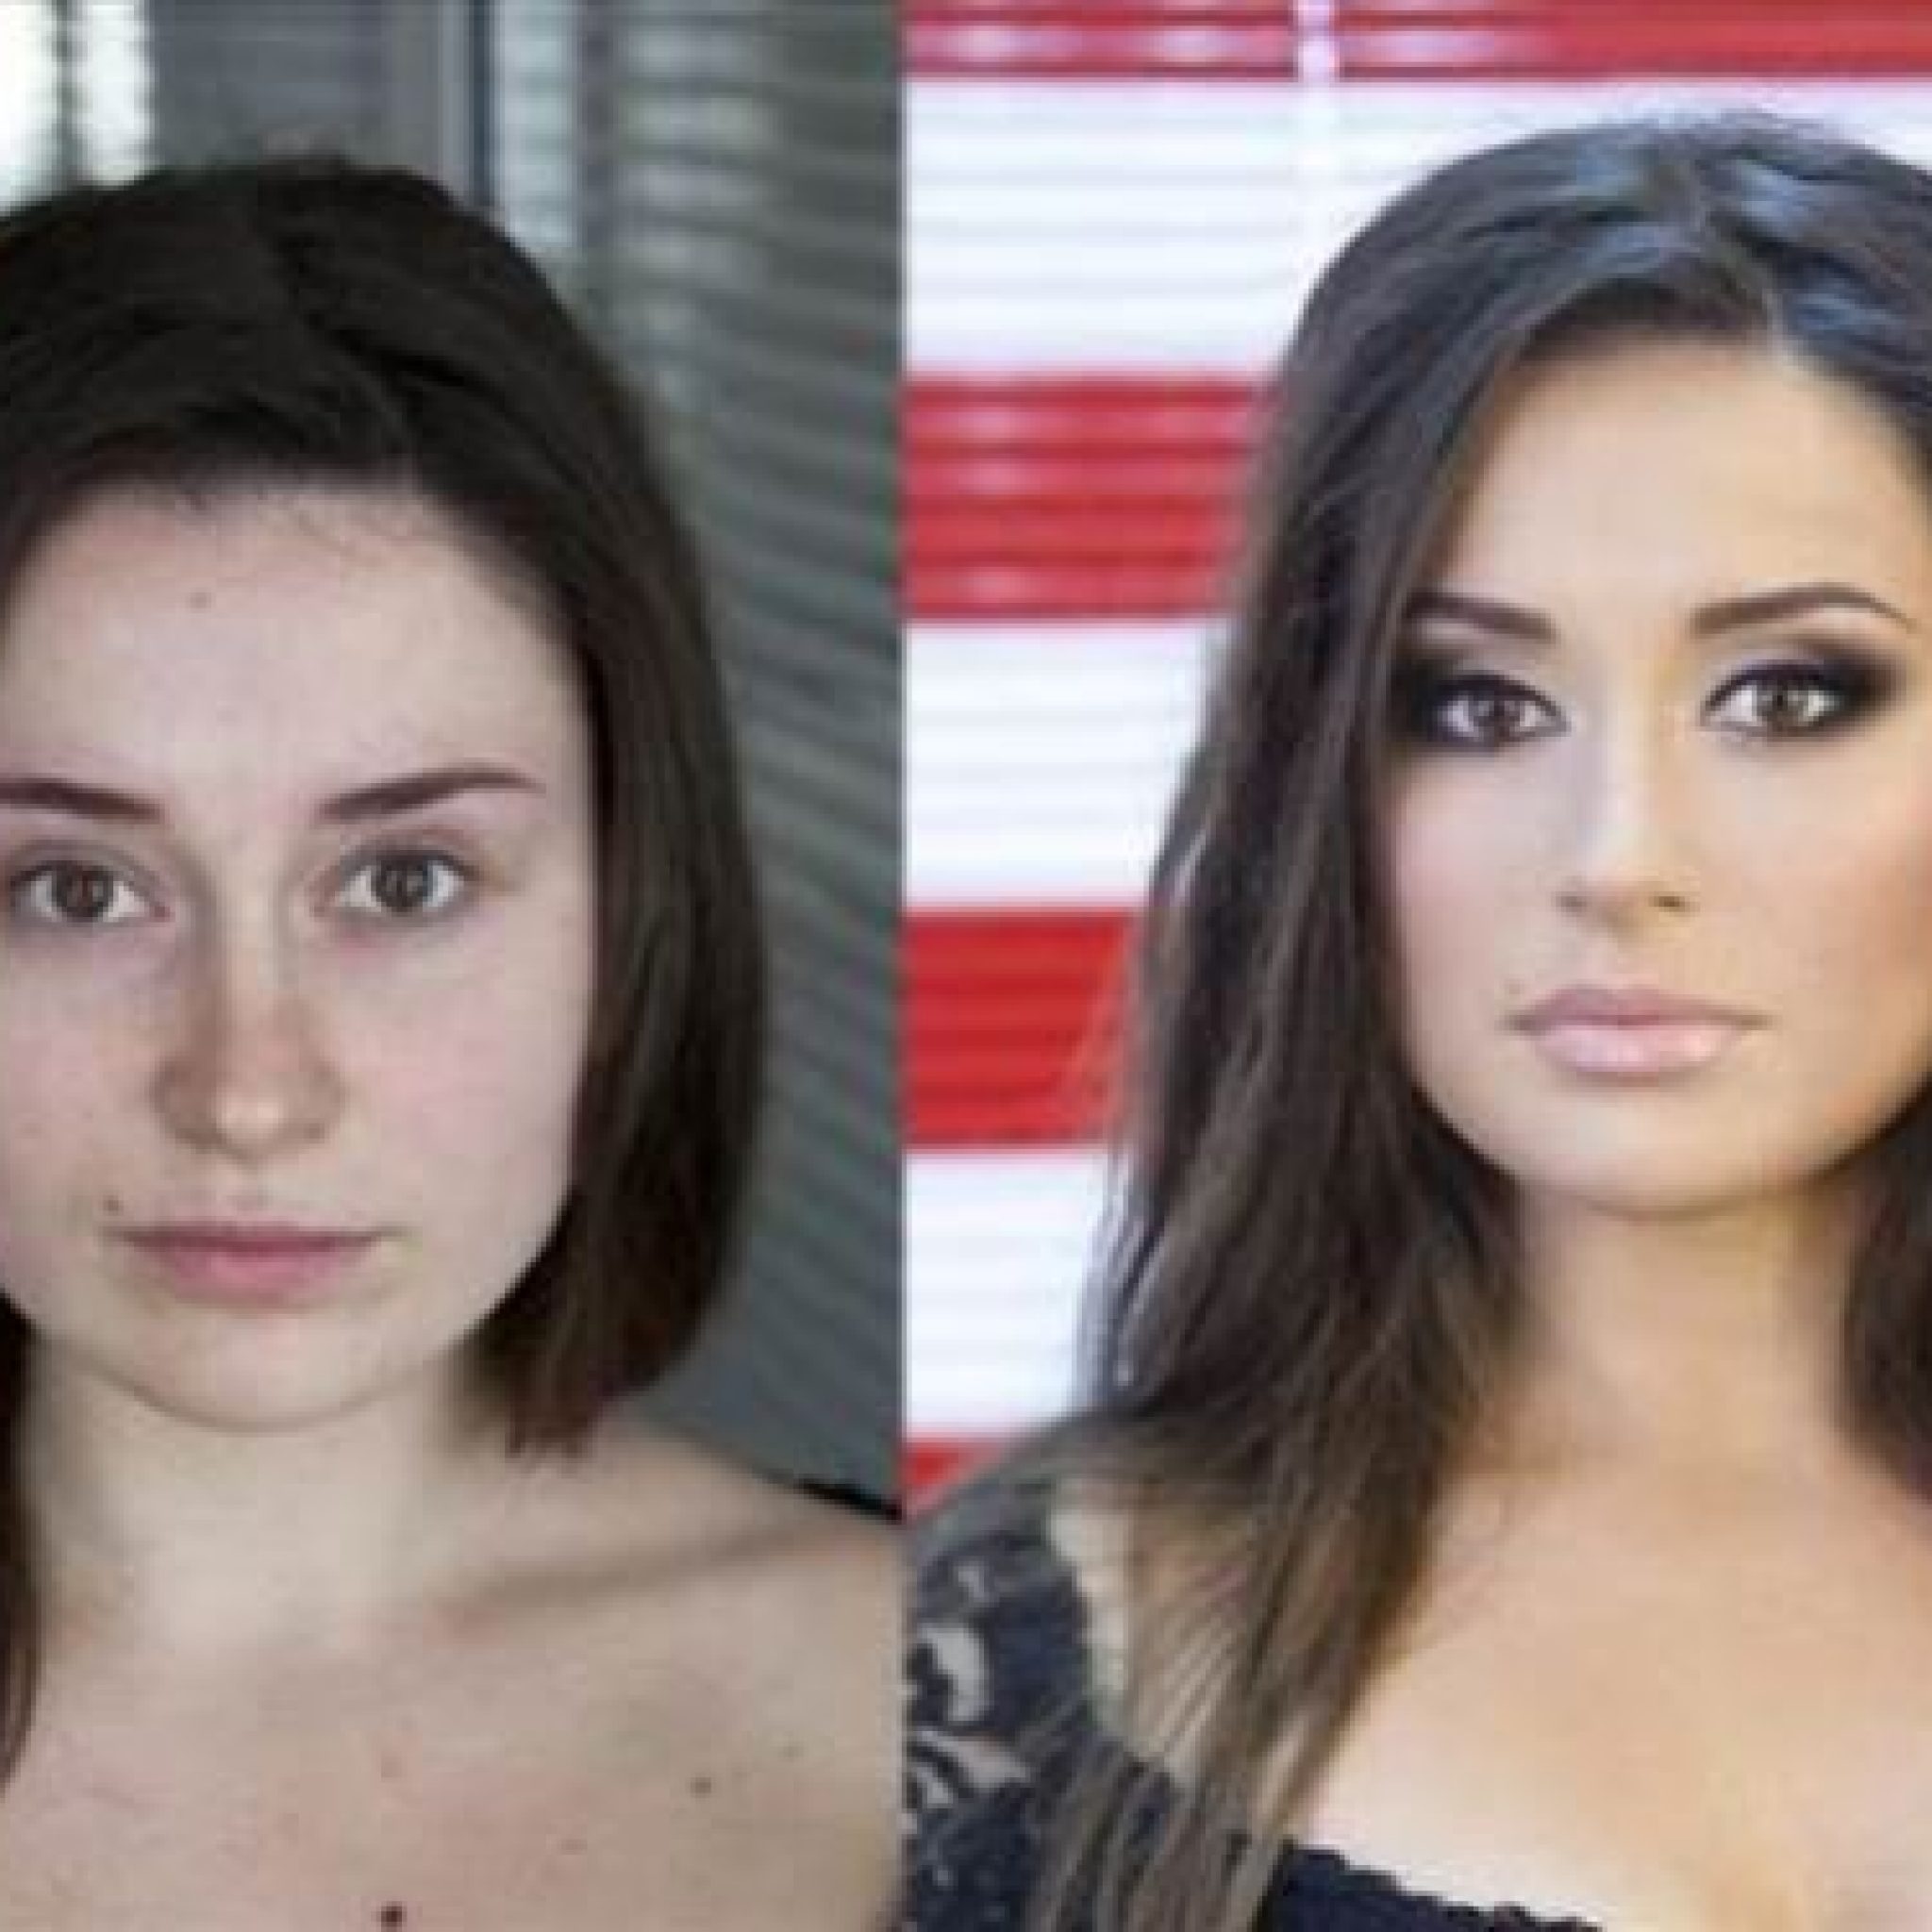 макияж меняет фото